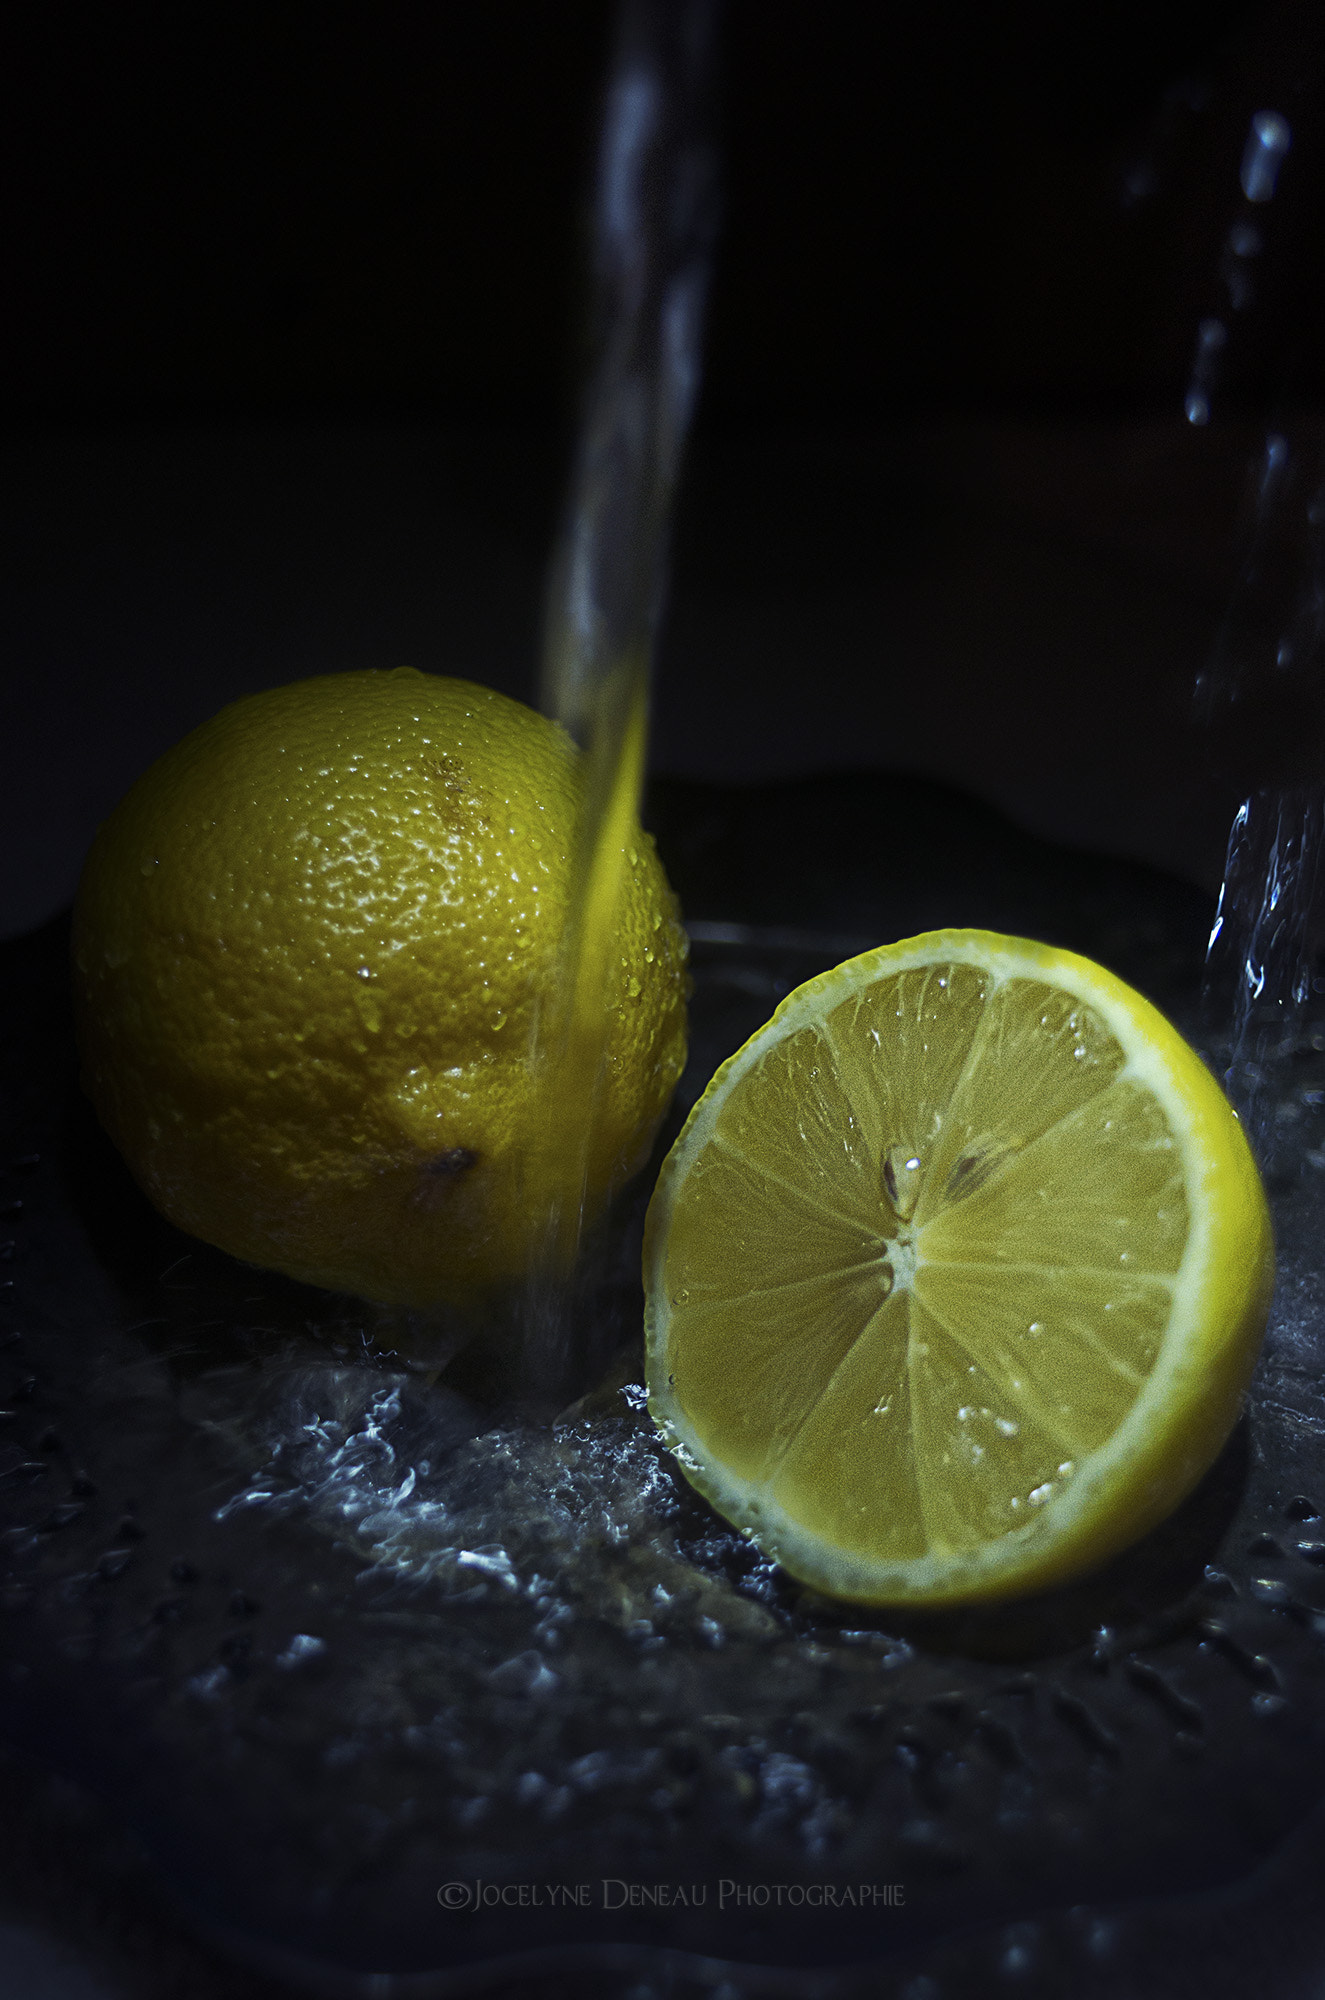 Pentax K-5 sample photo. Fresh lemons photography